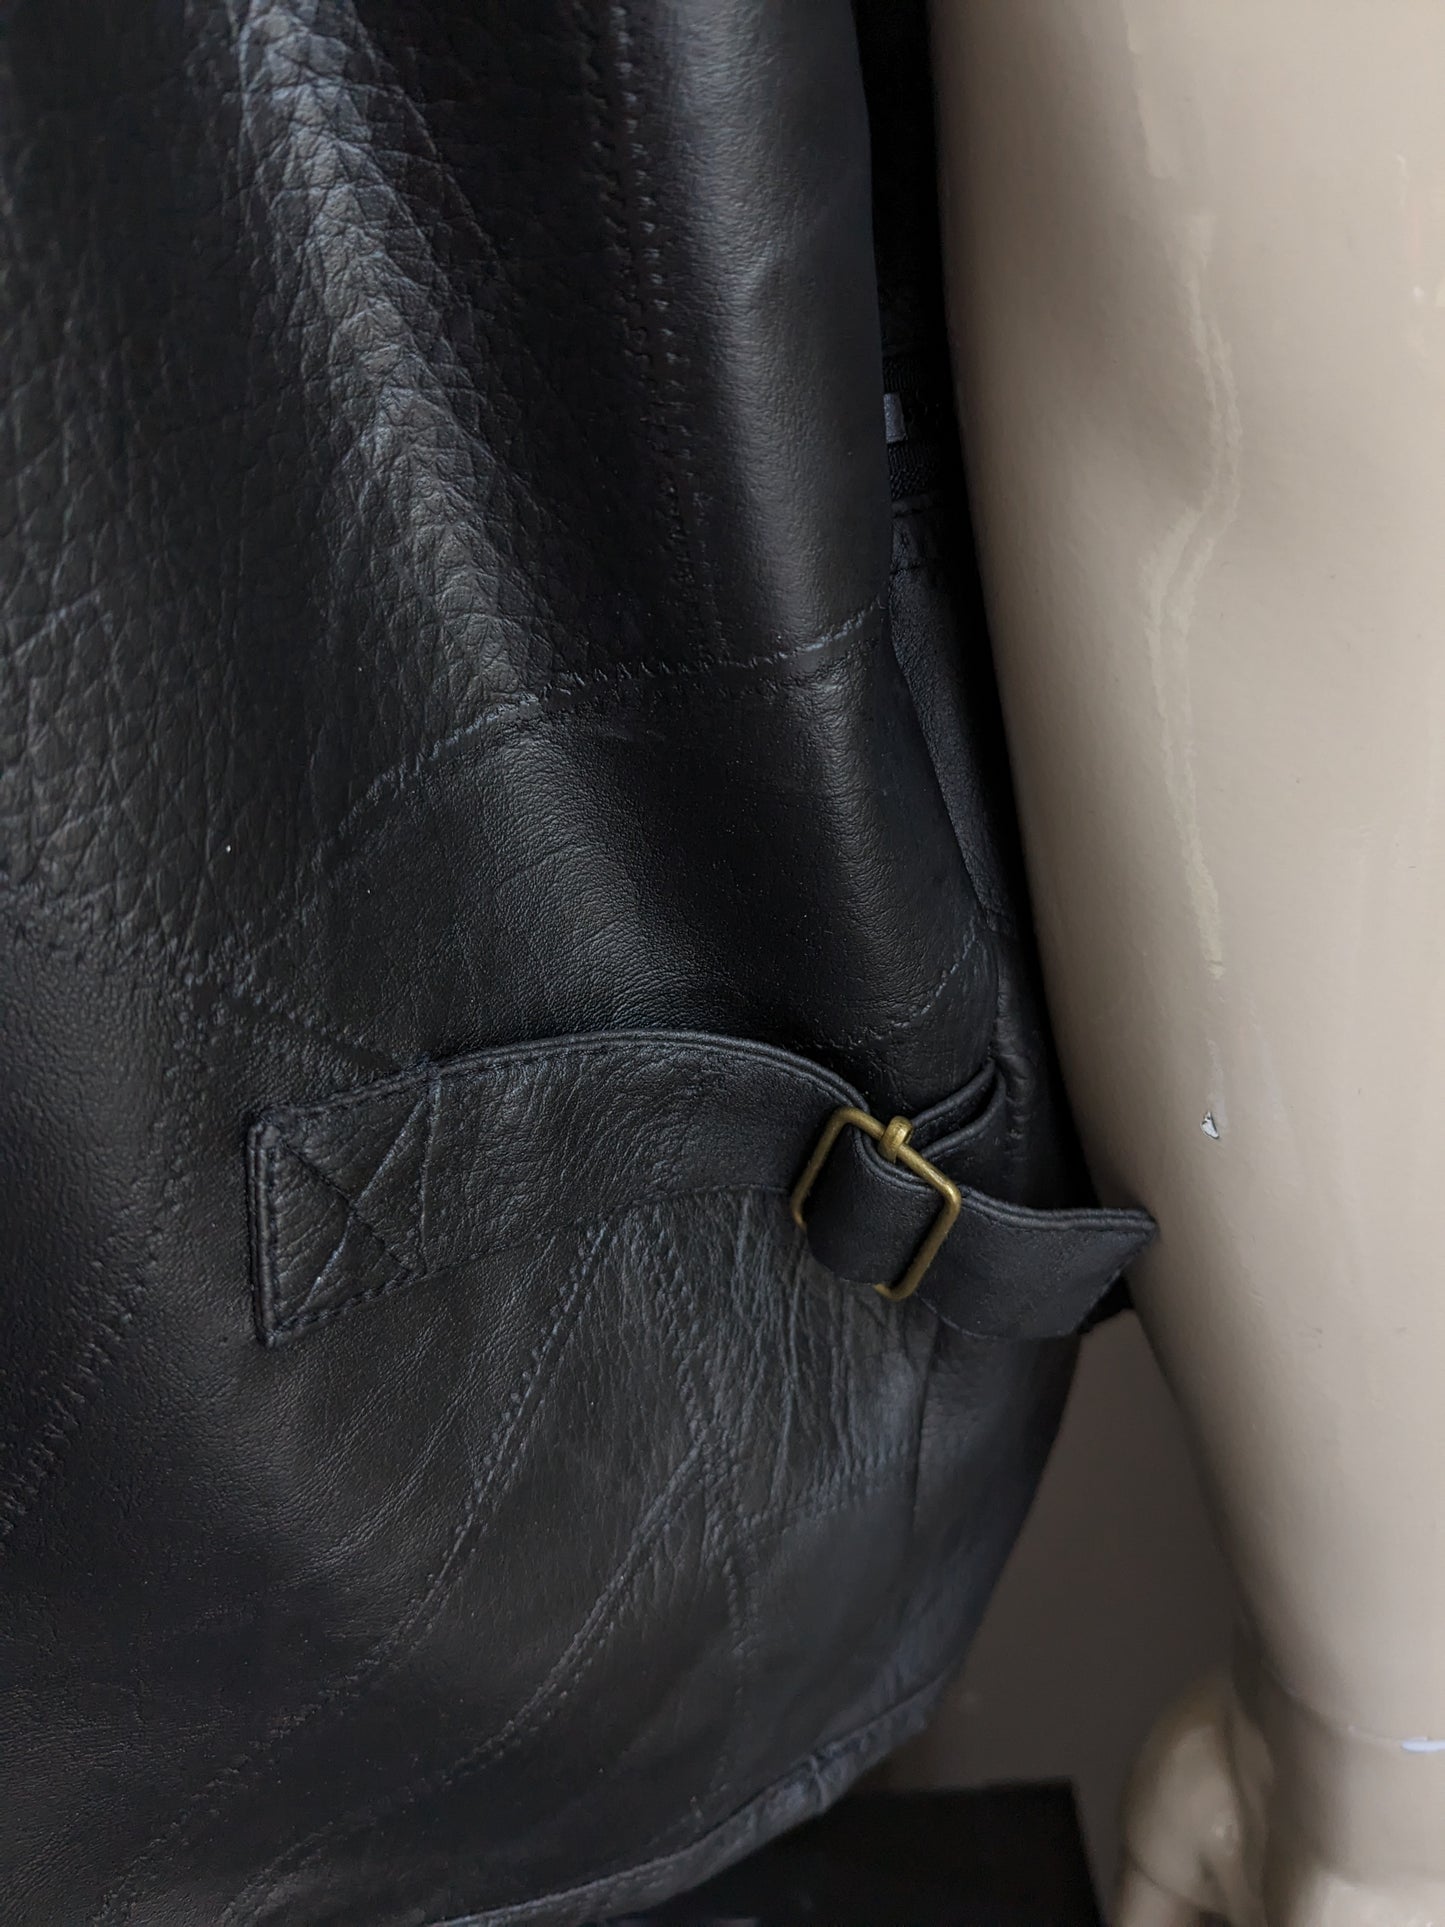 CS701 Cuerpo de cuero con muchas bolsas. Parches negros. Tamaño xl. Con 1 bolsillo interior.